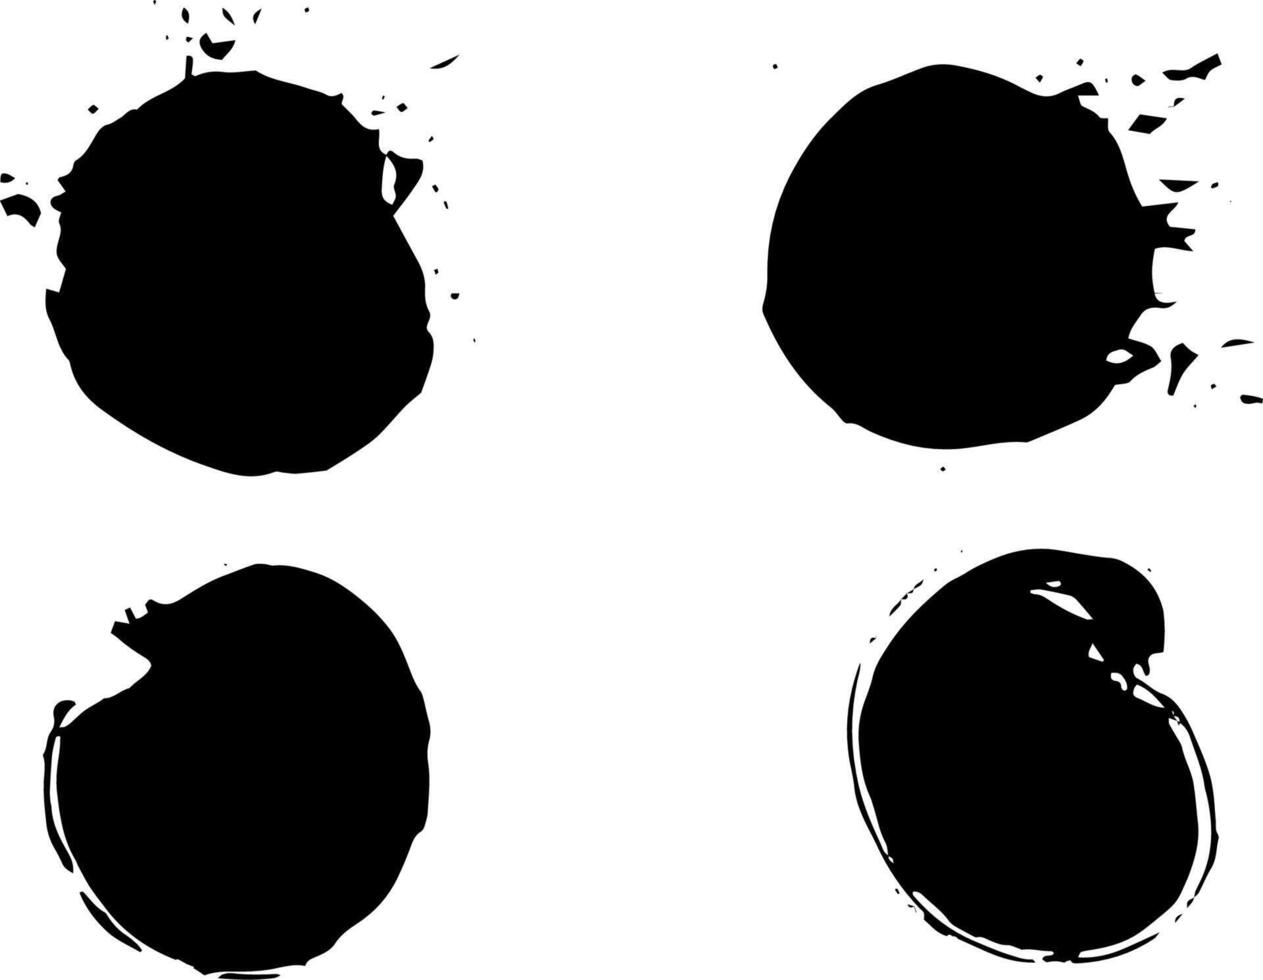 schwarze Fleck-Spritzerkreis-Vektorillustration lokalisiert auf weißem Hintergrund vektor